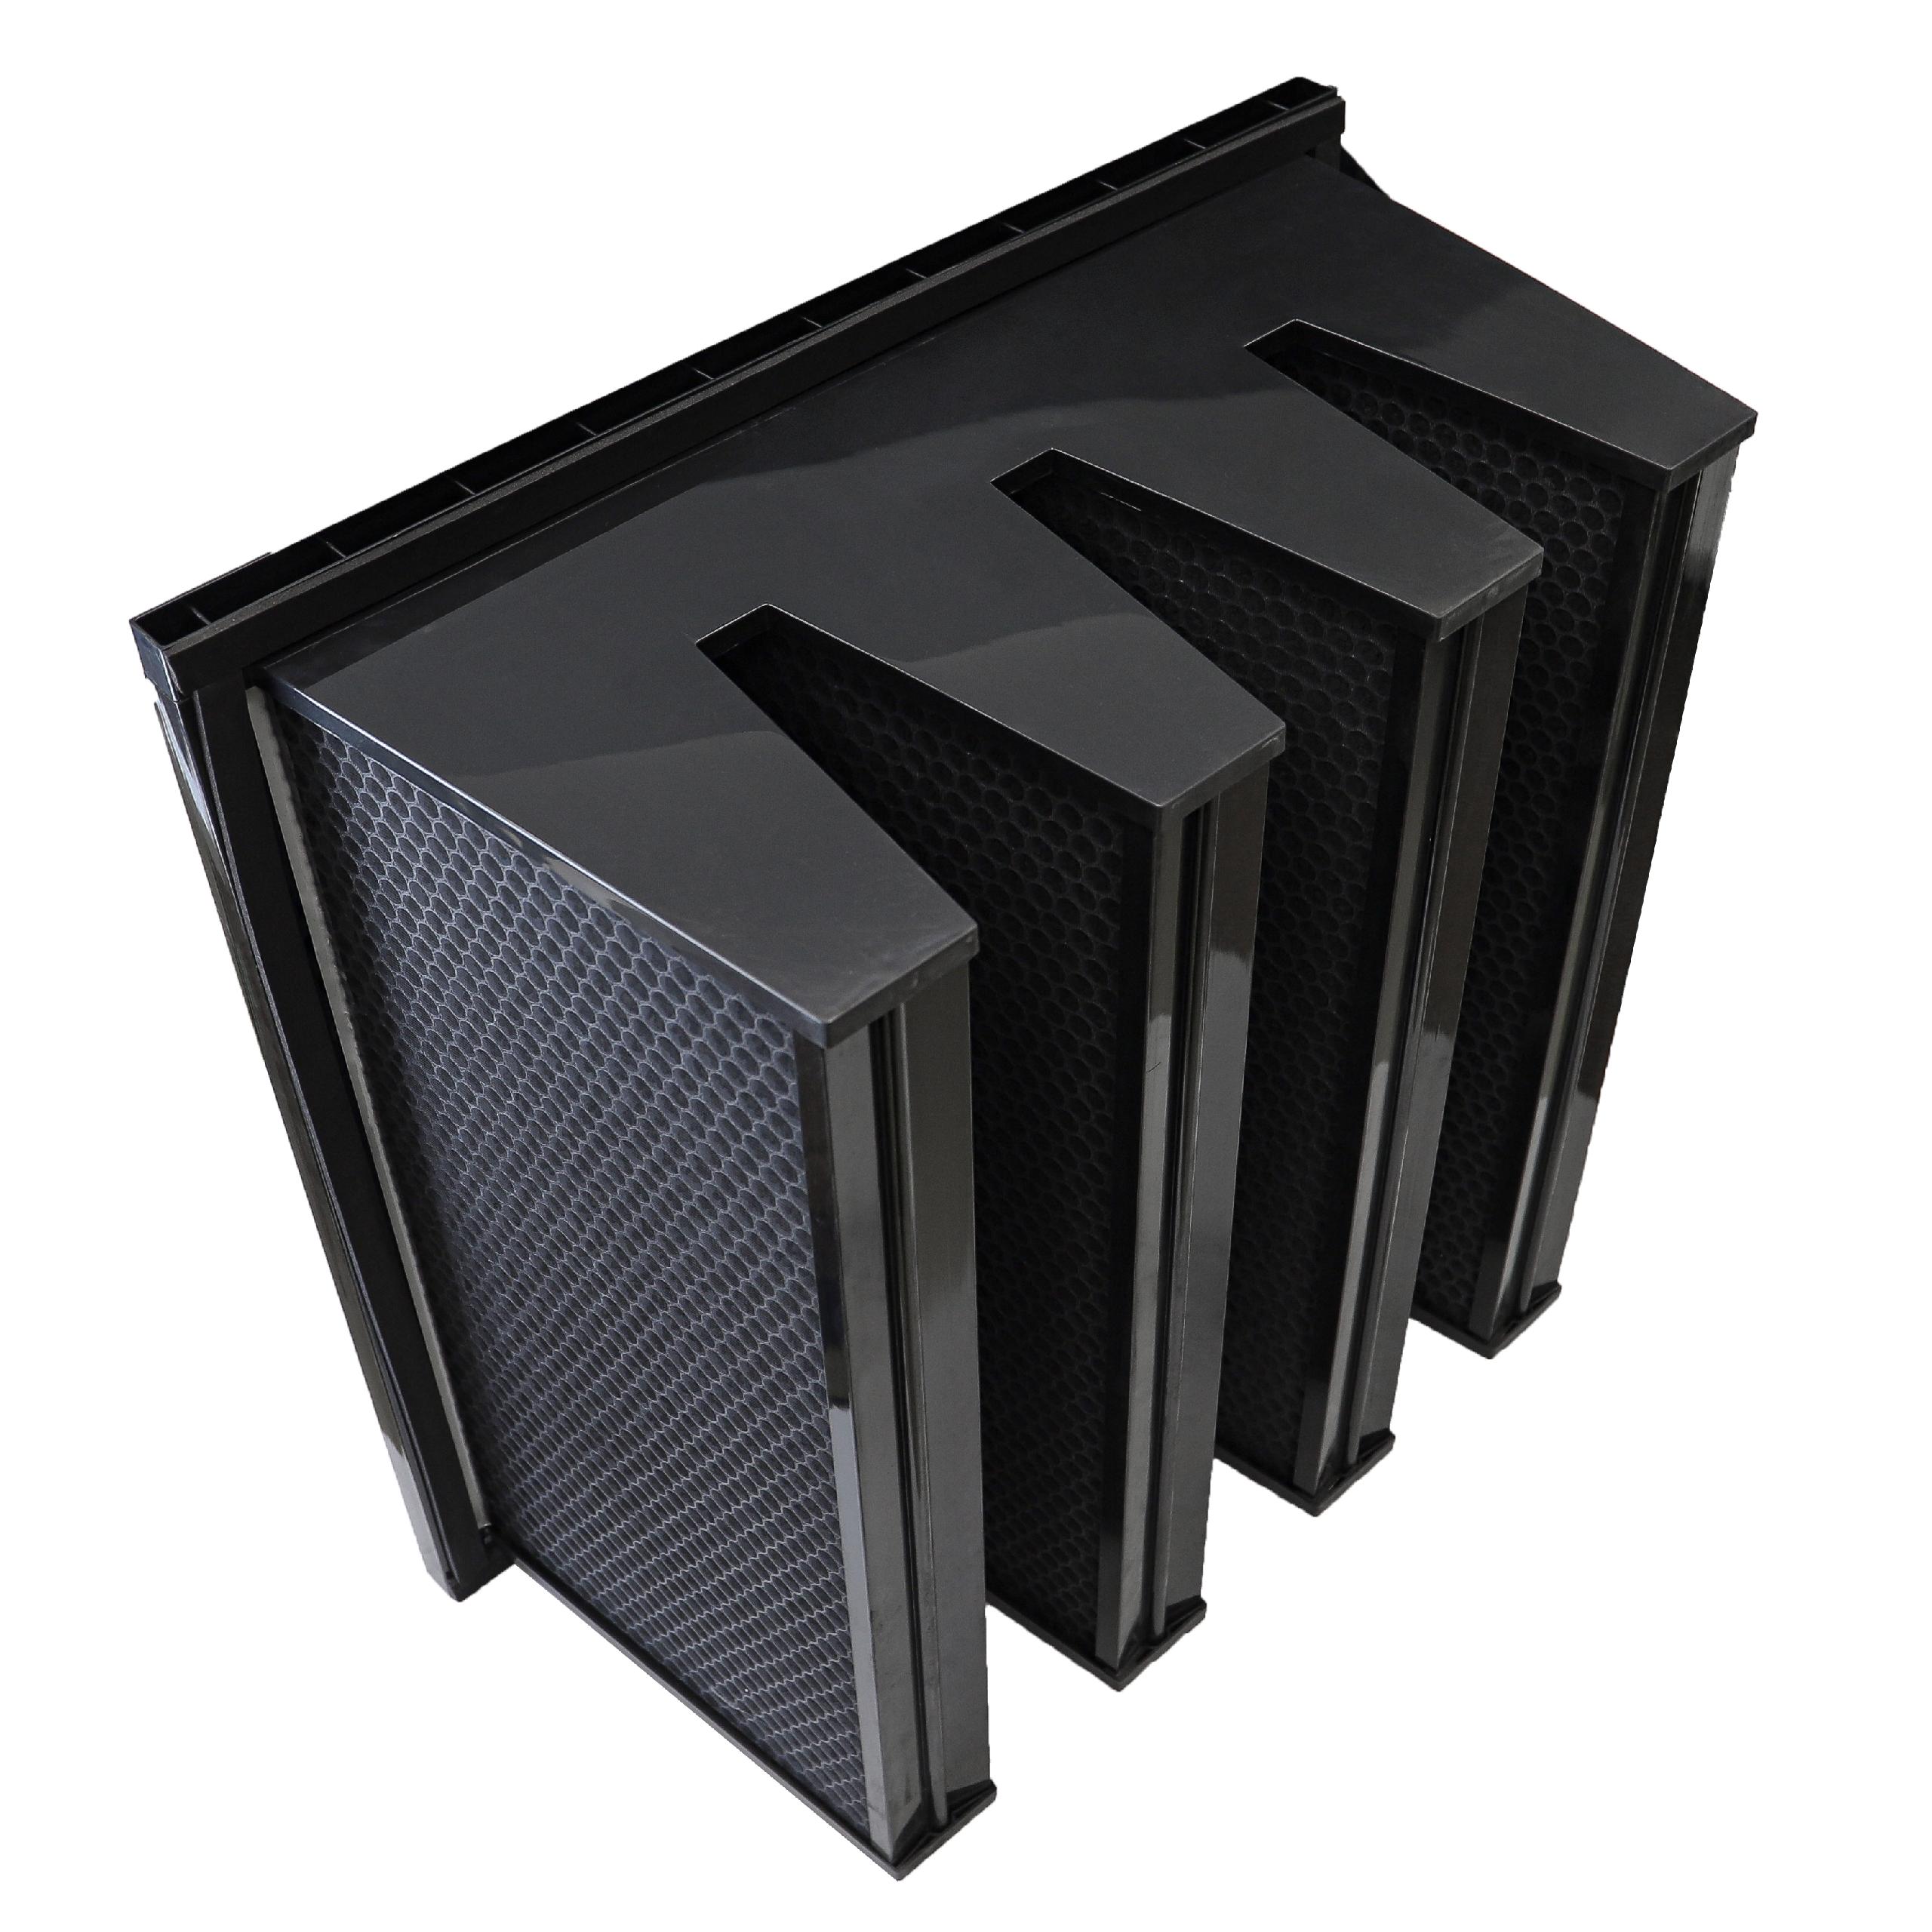 Filtr węglowy do wentylacji klimatyzacji - filtr plaster miodu, 59,2 x 59,2 x 29,2 cm